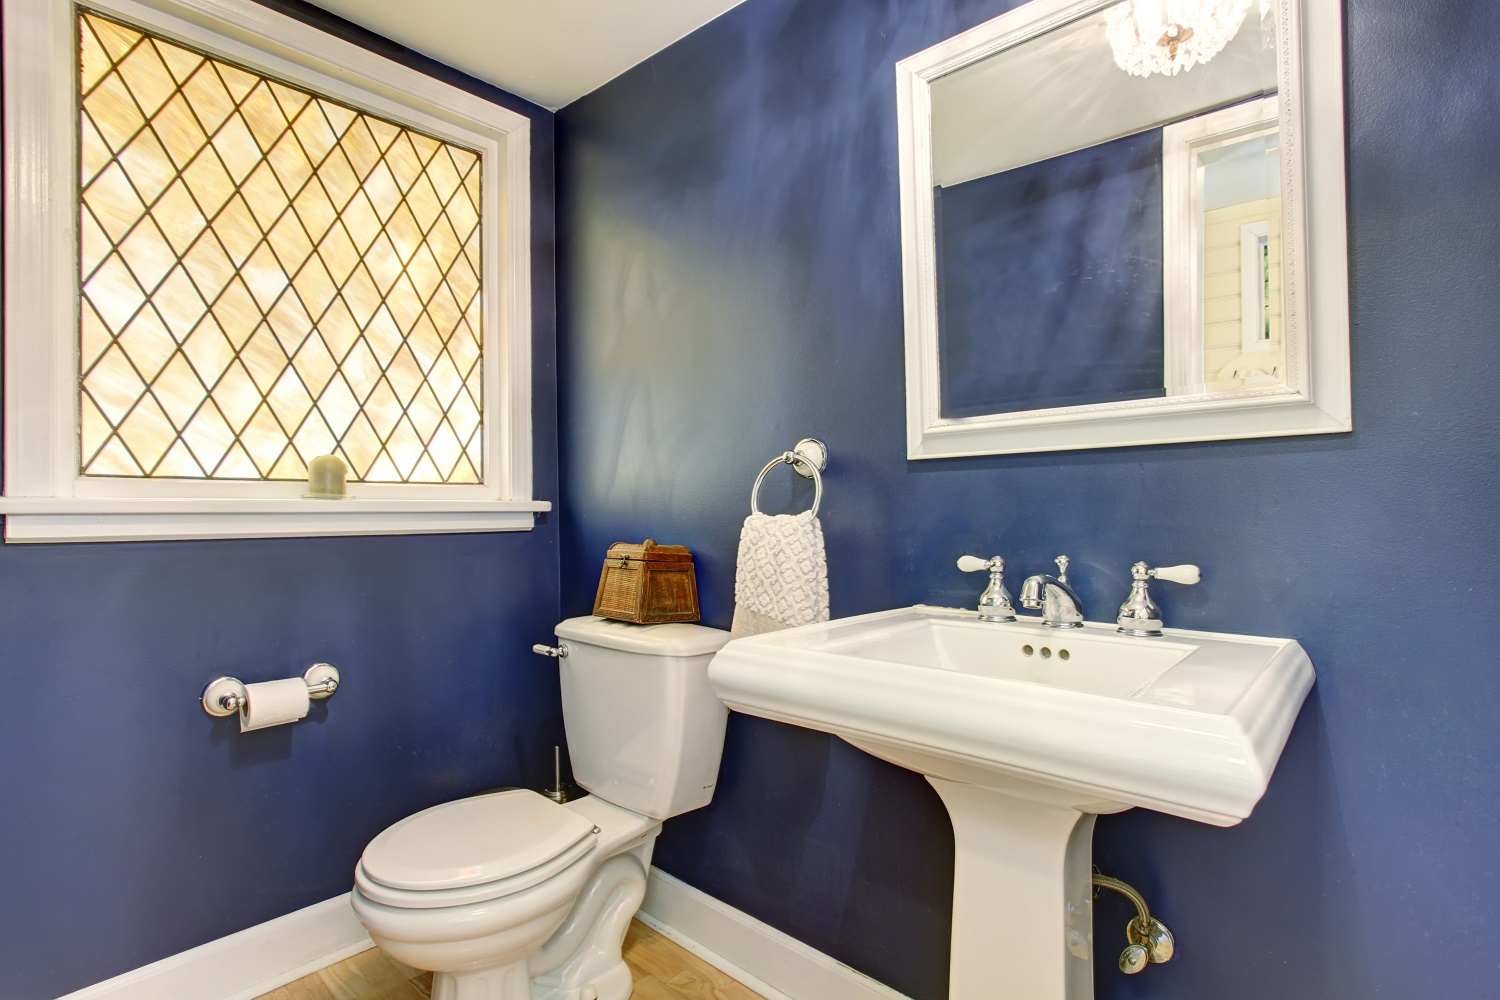 Ванная комната в темных синих тонах фото 452645587